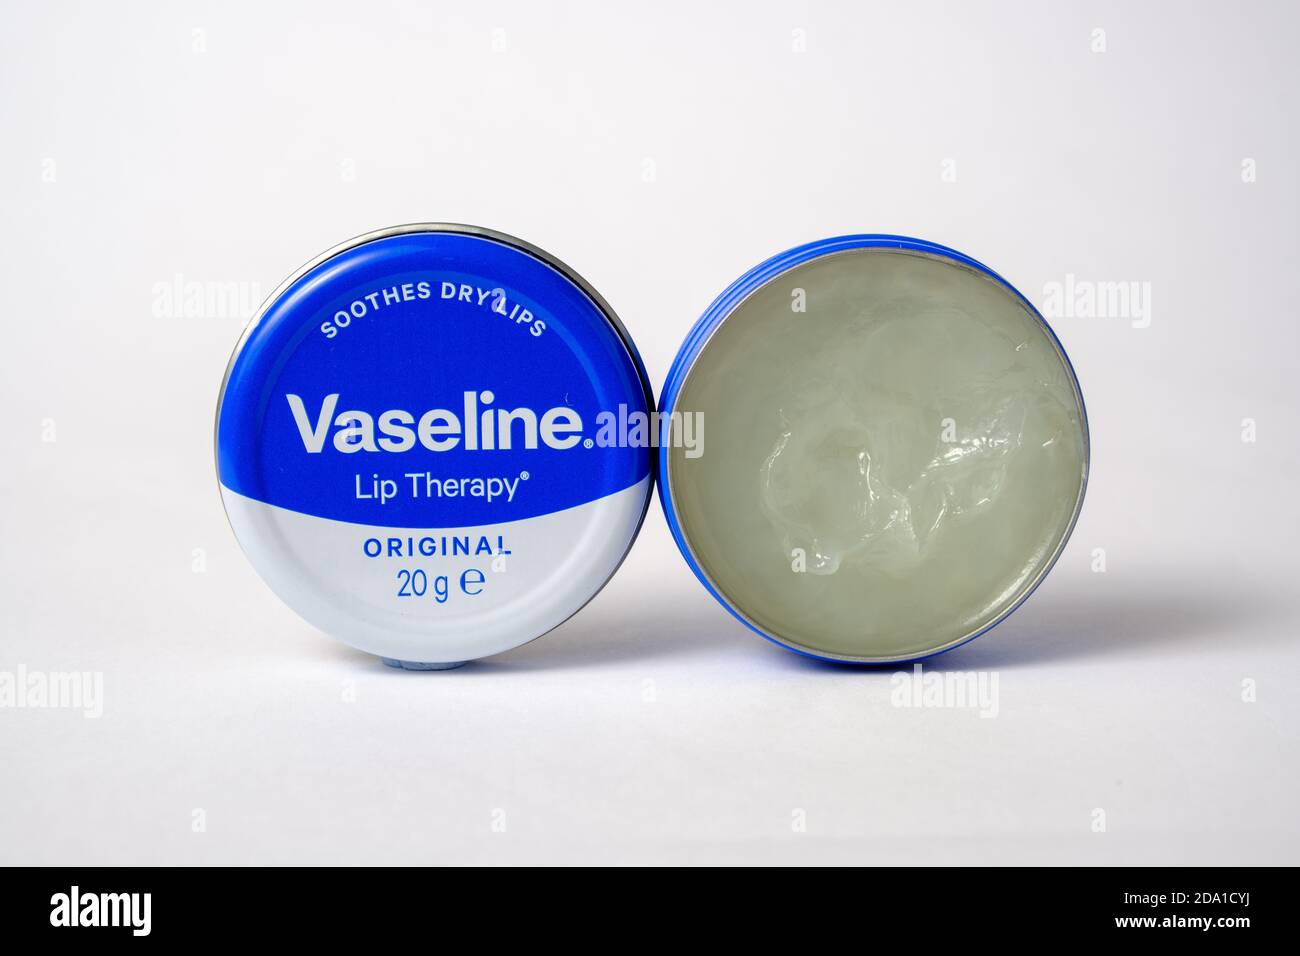 Vaseline Lippenbehandlungsprodukt. Nahaufnahme des Bildes. Produkt auf Basis von Mineralölgelee für die Haut. Stockfoto